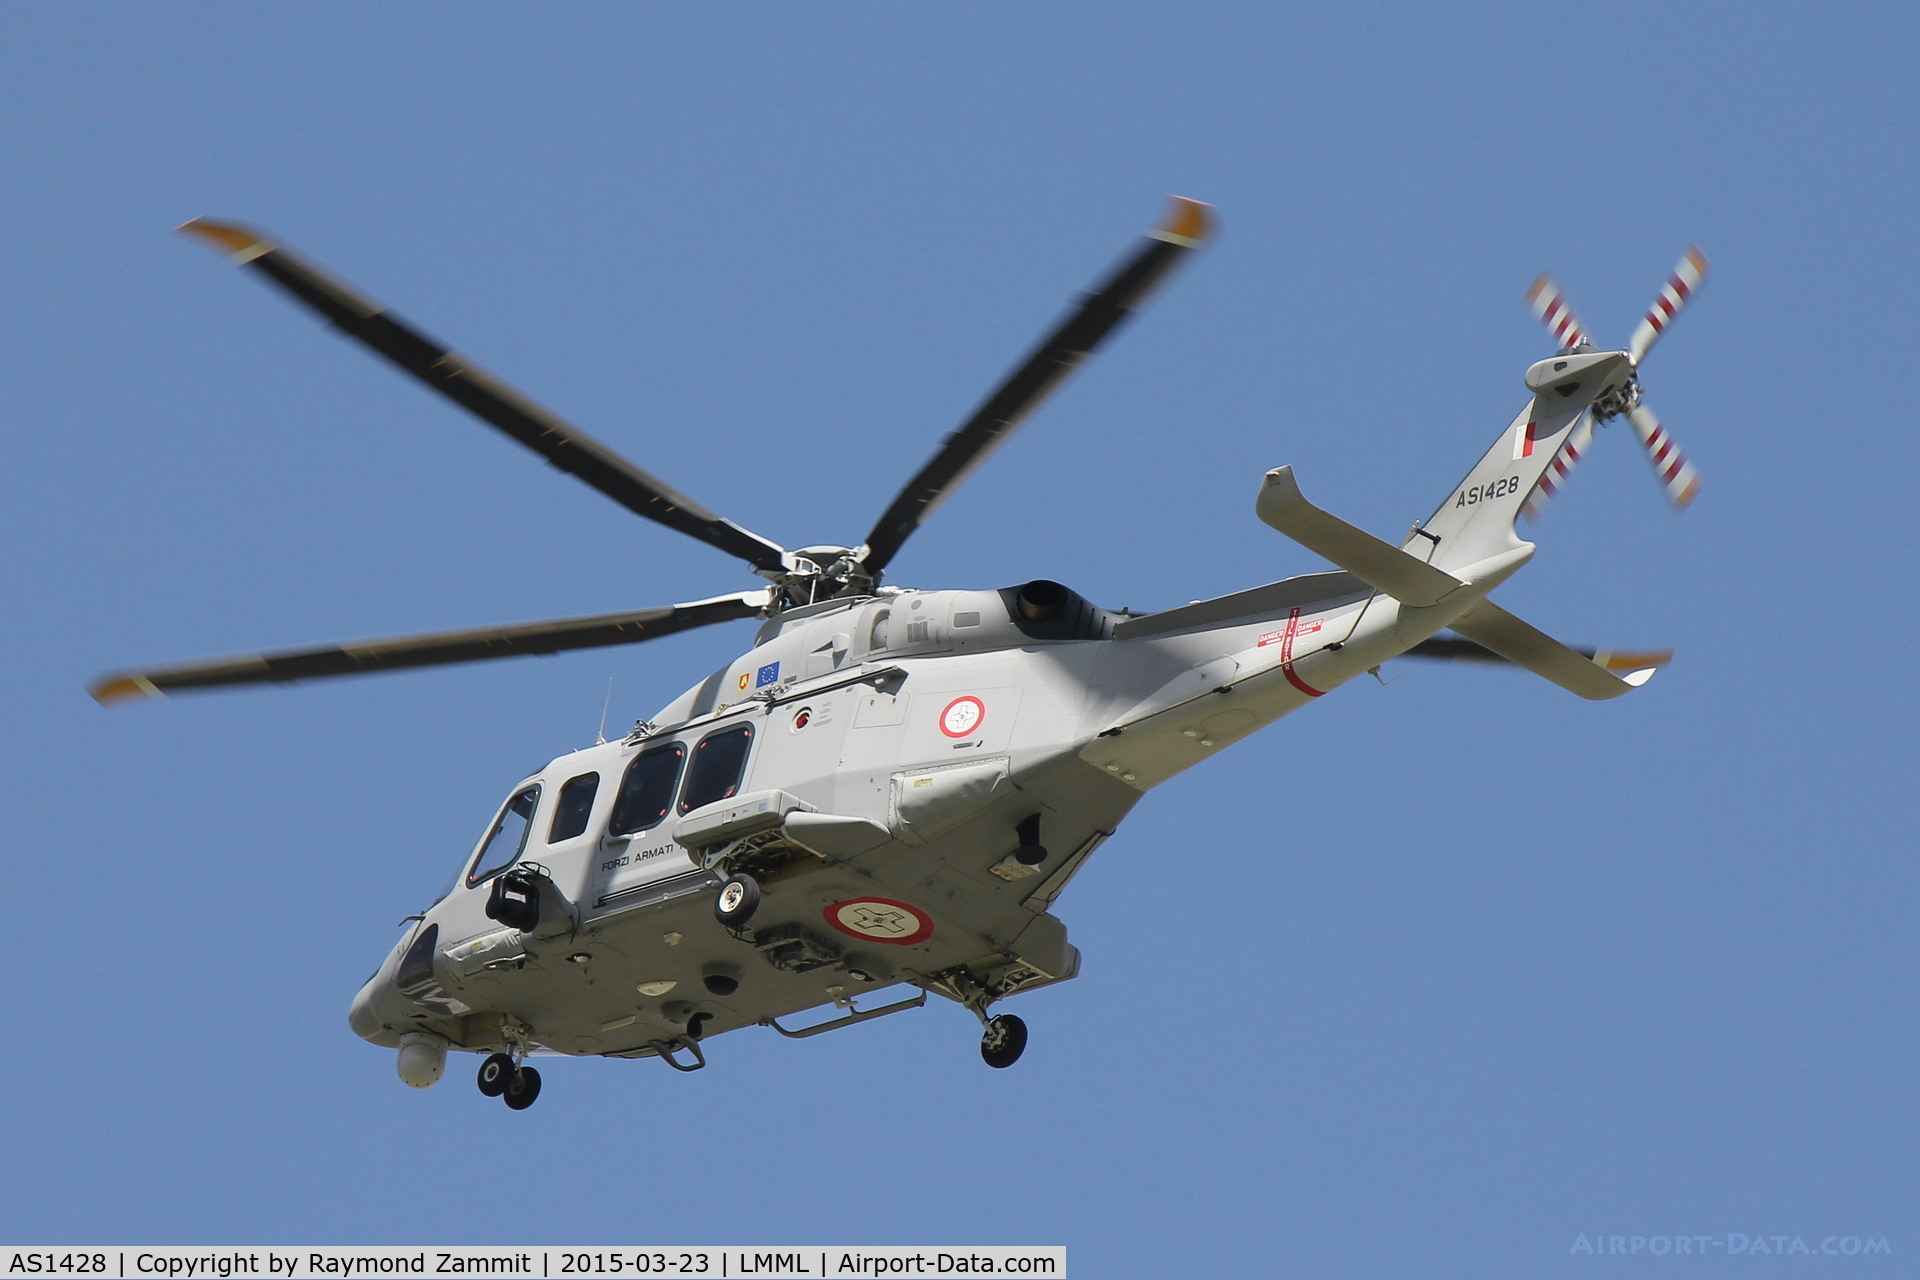 AS1428, 2014 AgustaWestland AW-139 C/N 31560, Agusta Westland AW139 AS1428 Armed Forces of Malta.